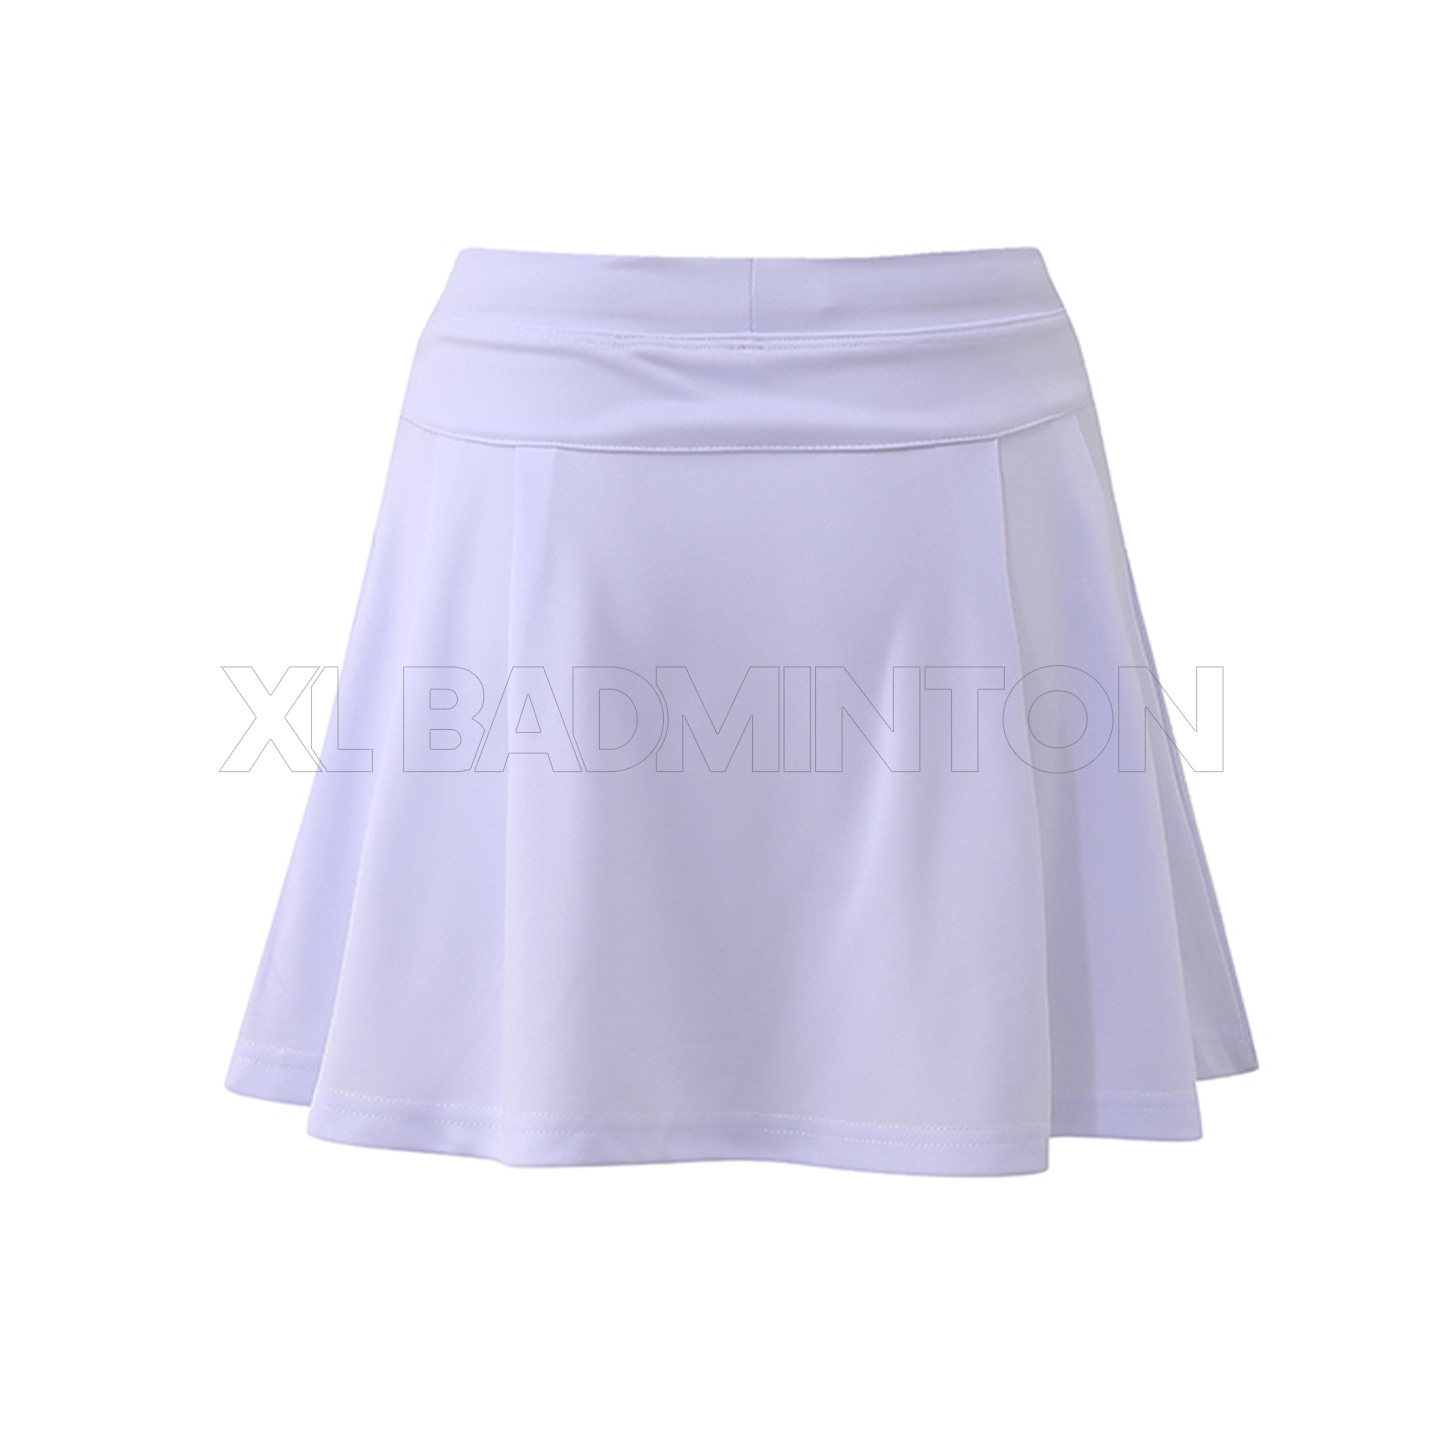 yn-skirt-07-white-2